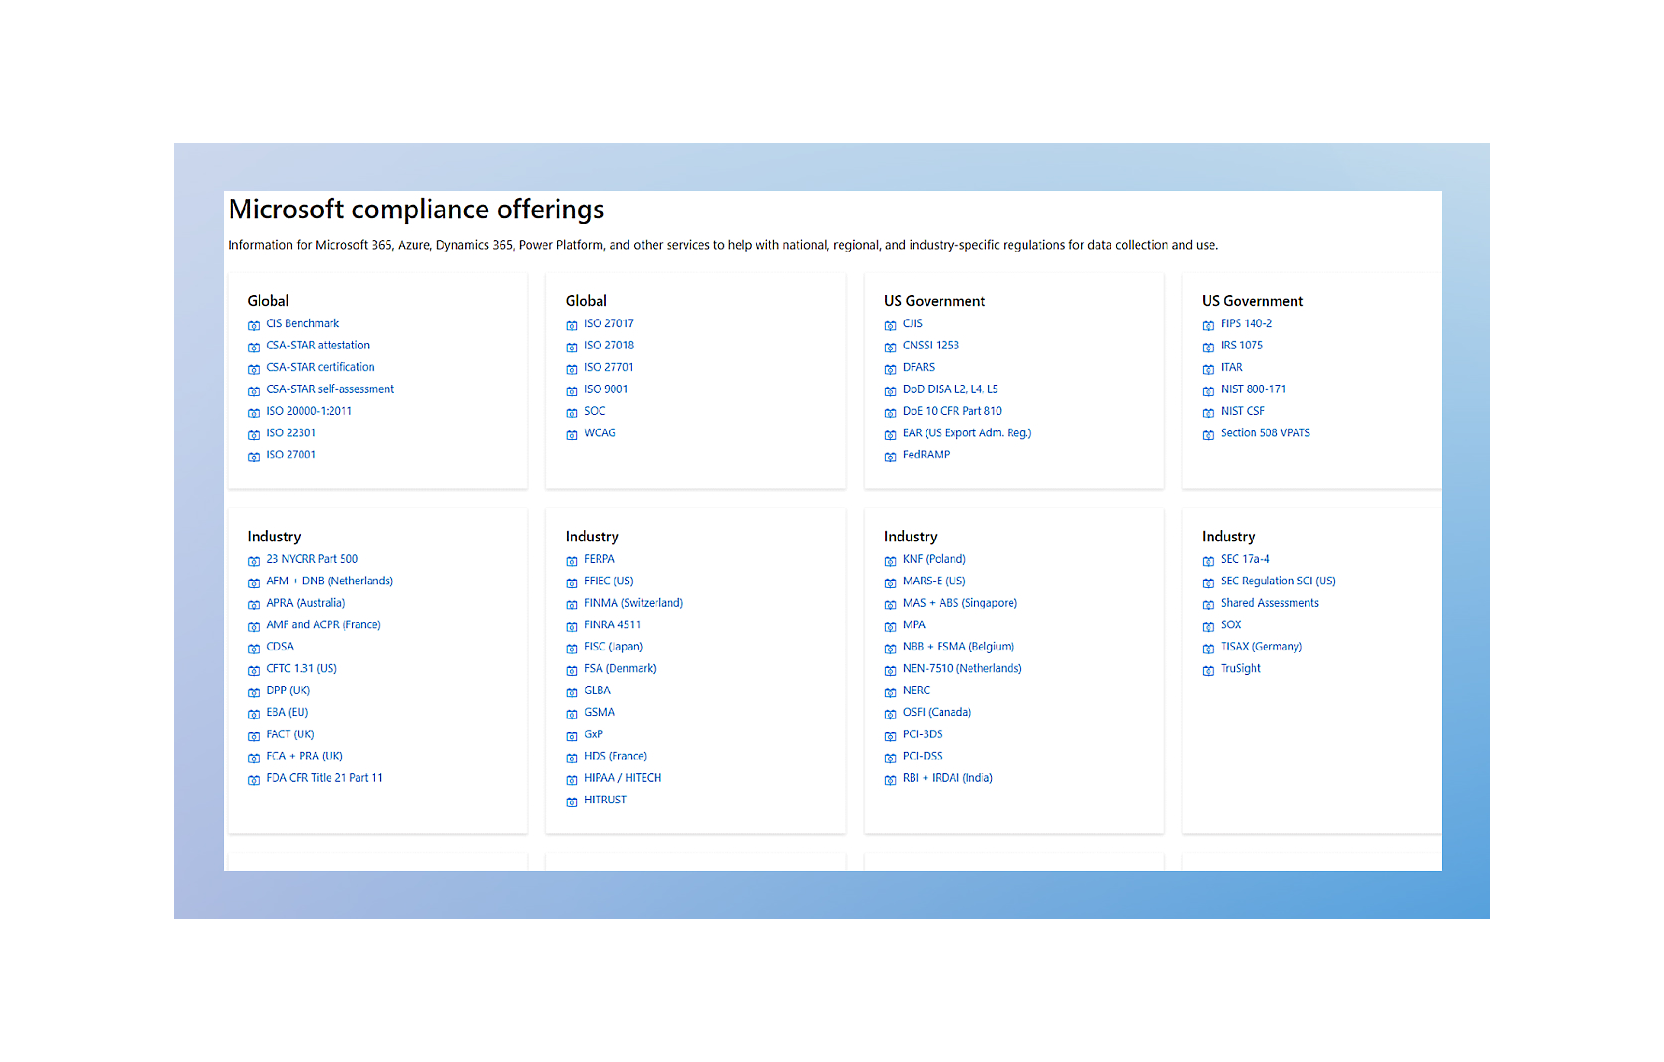 Снимок экрана с различными предложениями Майкрософт по обеспечению соответствия требованиям